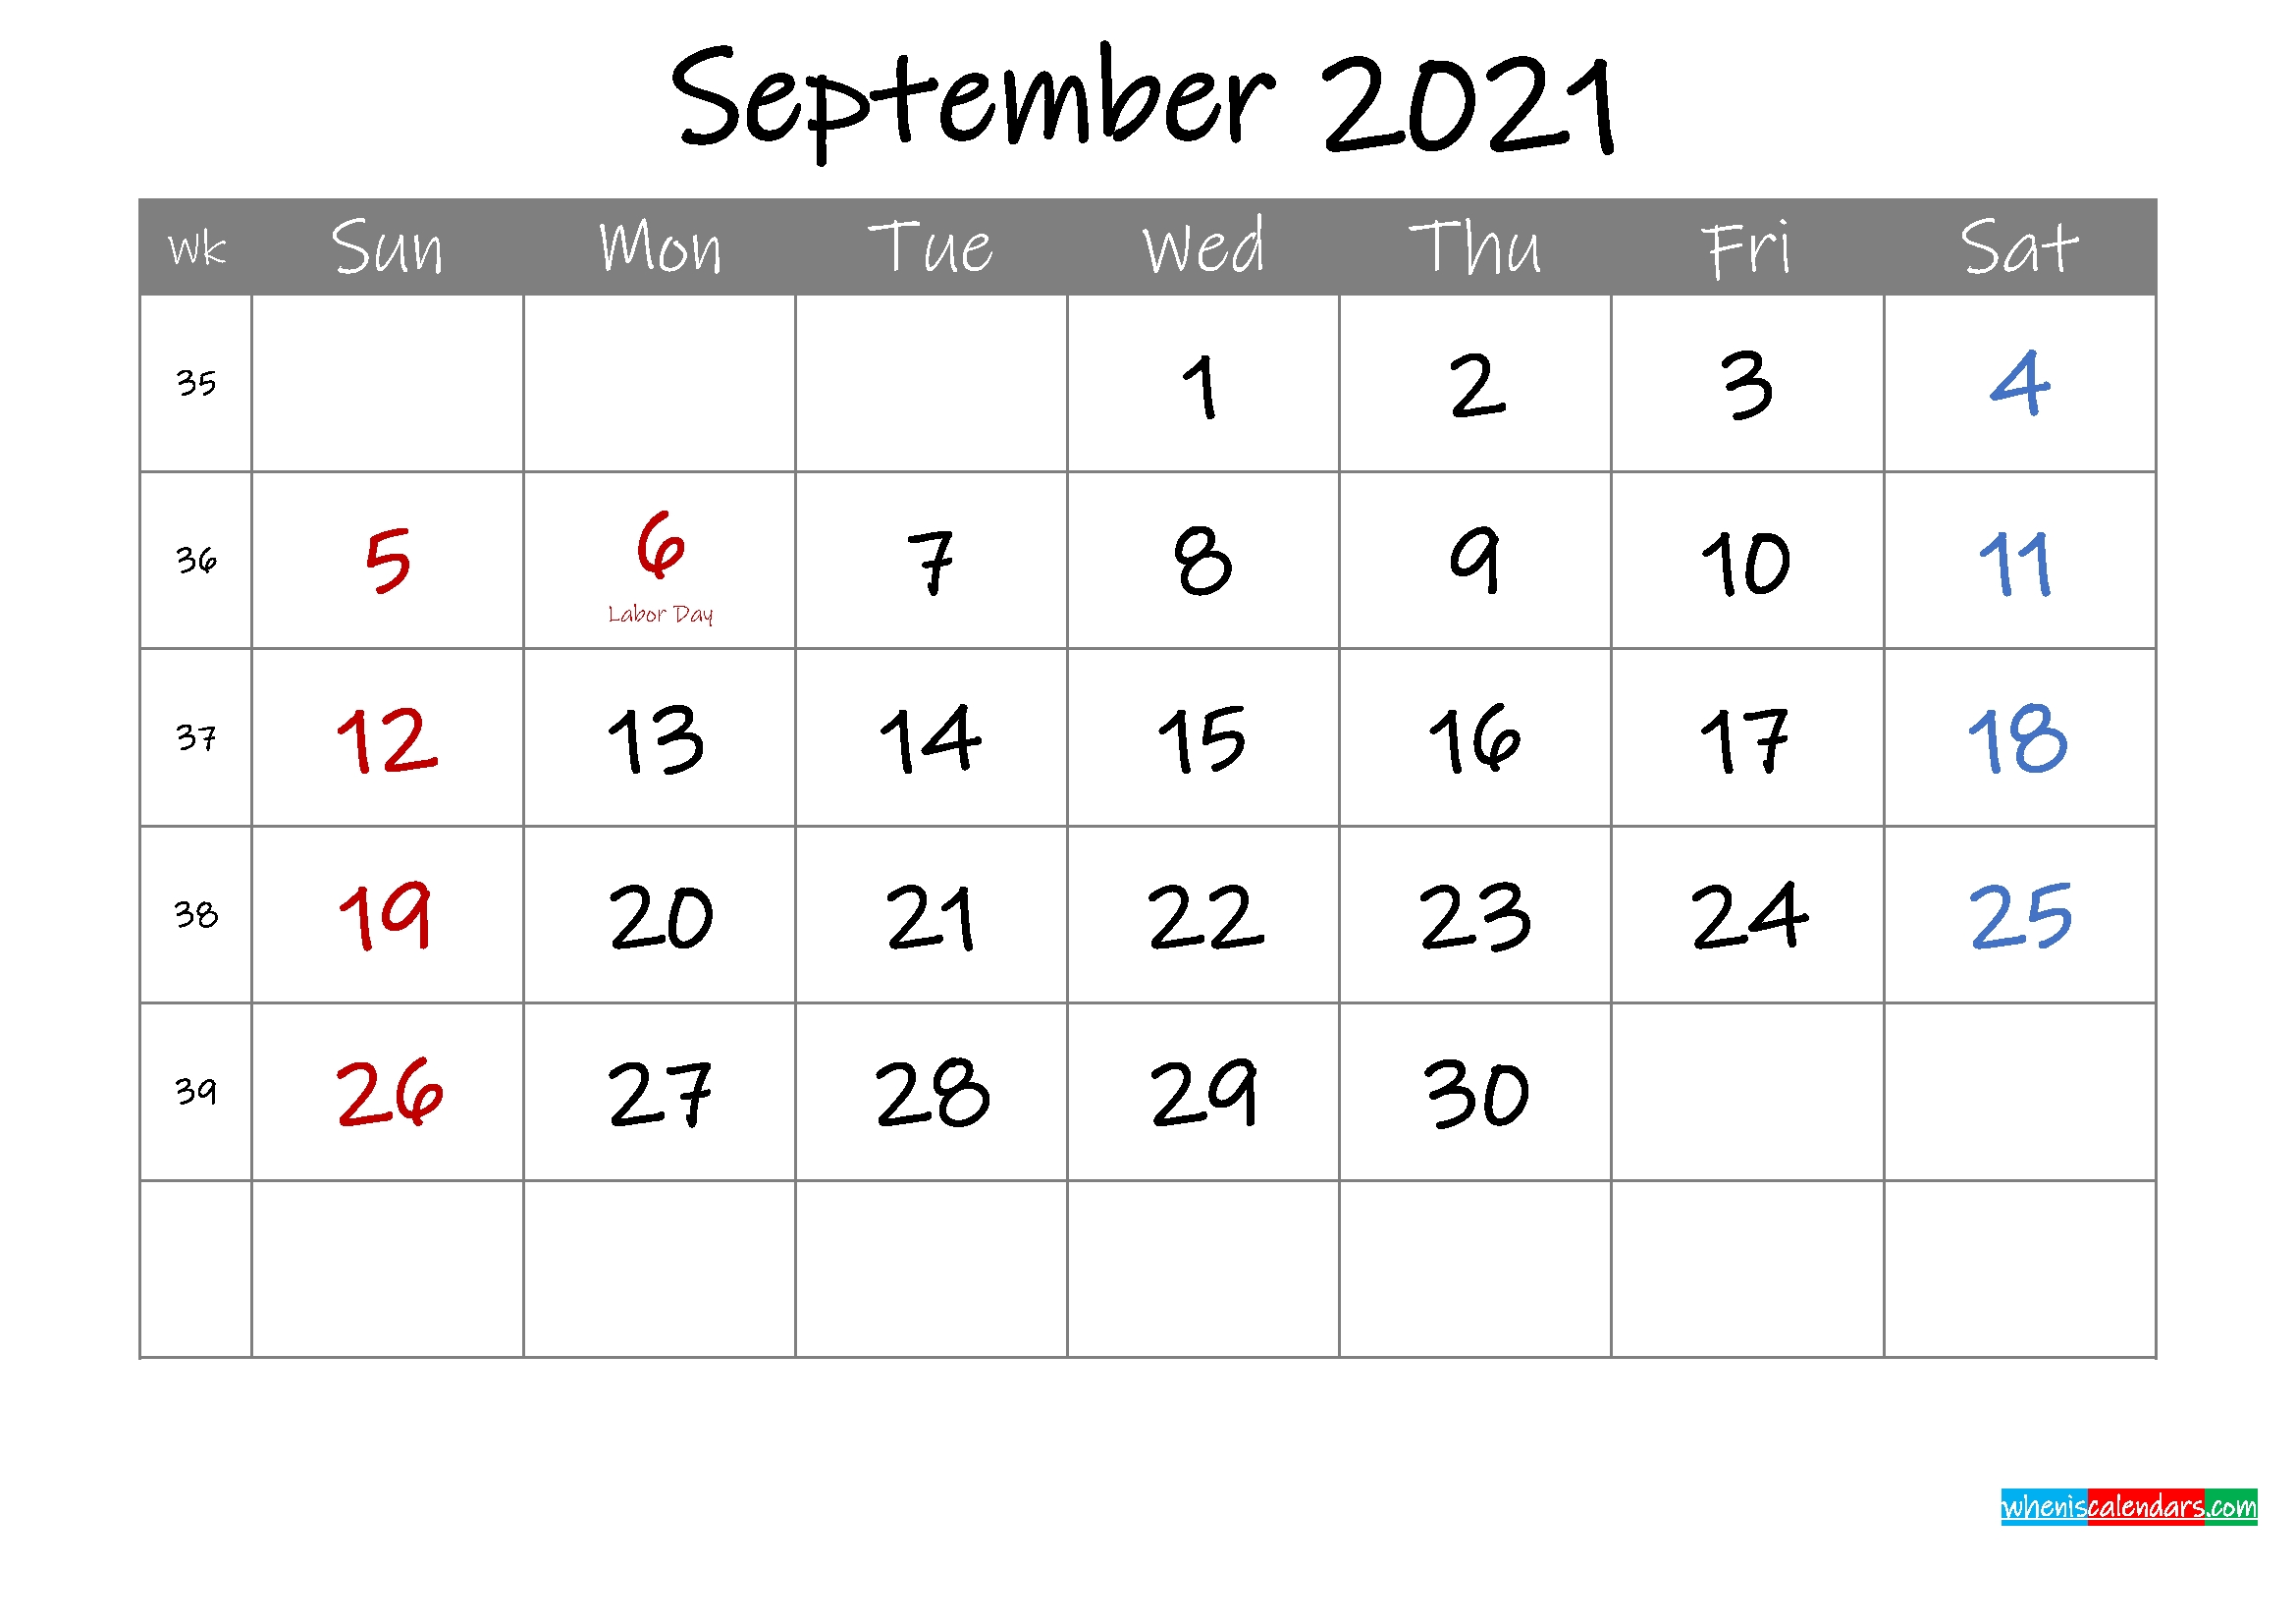 Editable September 2021 Calendar With Holidays Template - Calendar Template 2021 Calendar Events September 2021